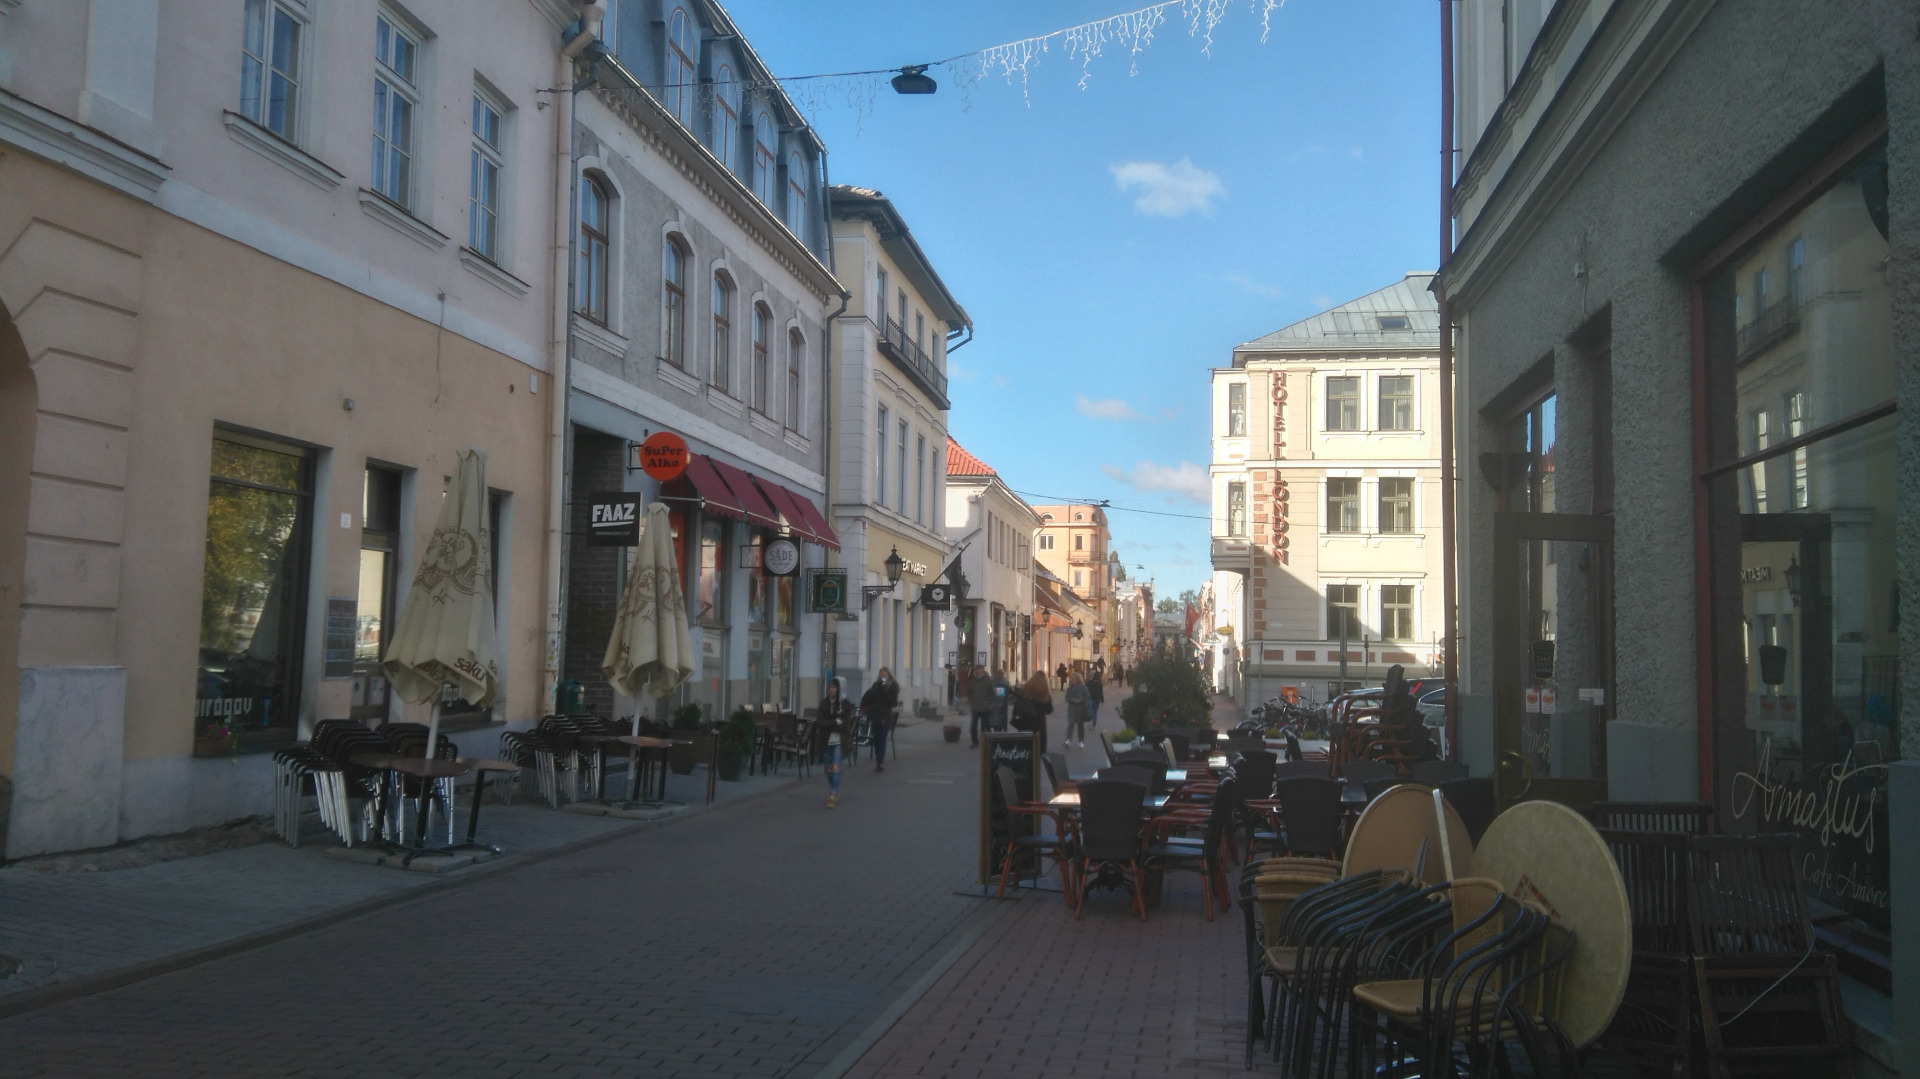 Tartu linnavaade. Suurturg (Raekoja plats), vaade Rüütli tänavale. 20. sajandi algus. rephoto